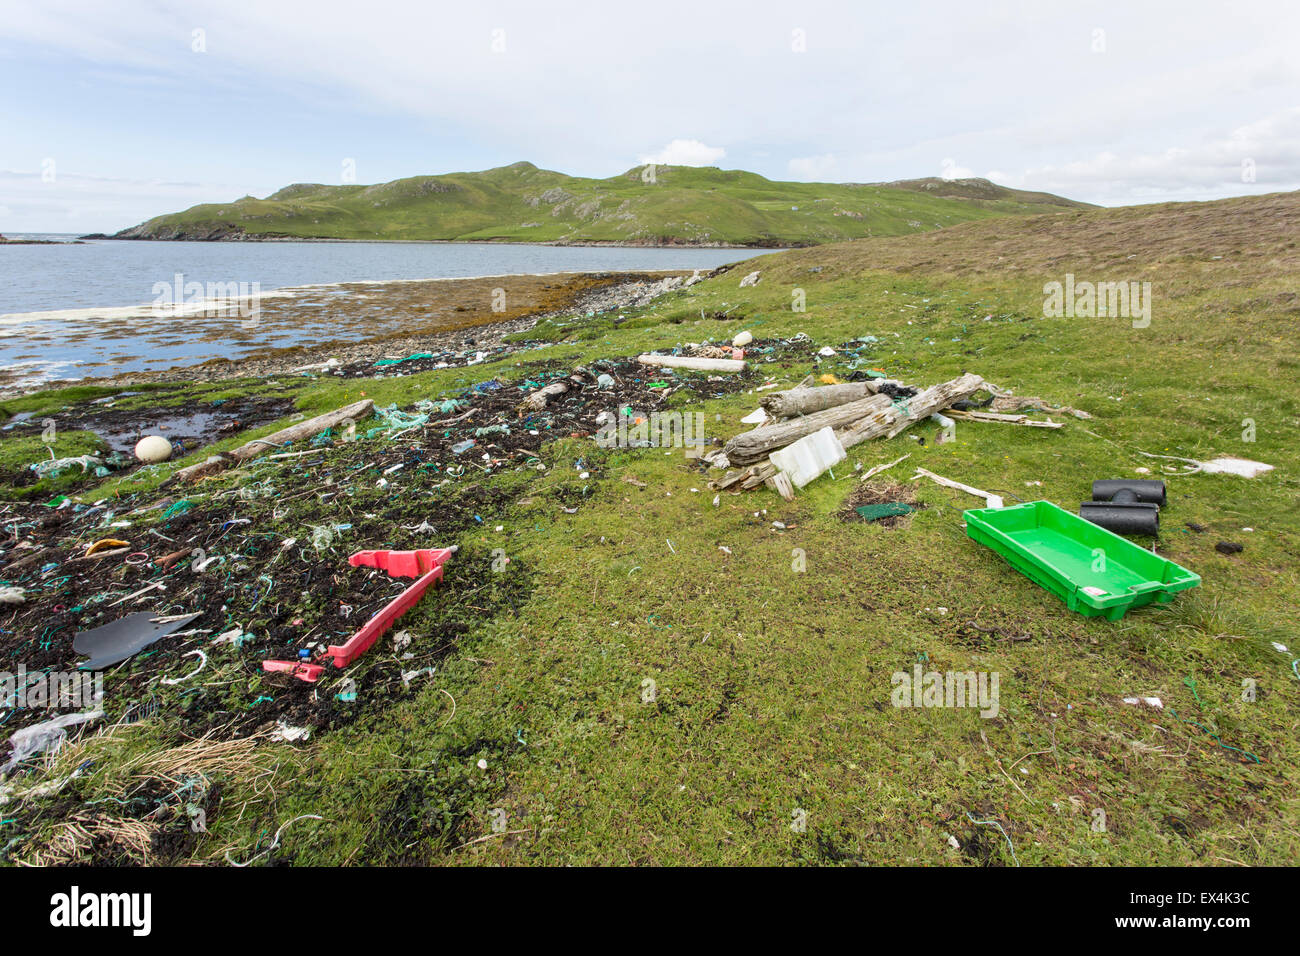 Déchets (aznavour) vers le rivage de l'océan Atlantique, y compris de nombreux objets en plastique, sur le continent, les Shetland Banque D'Images